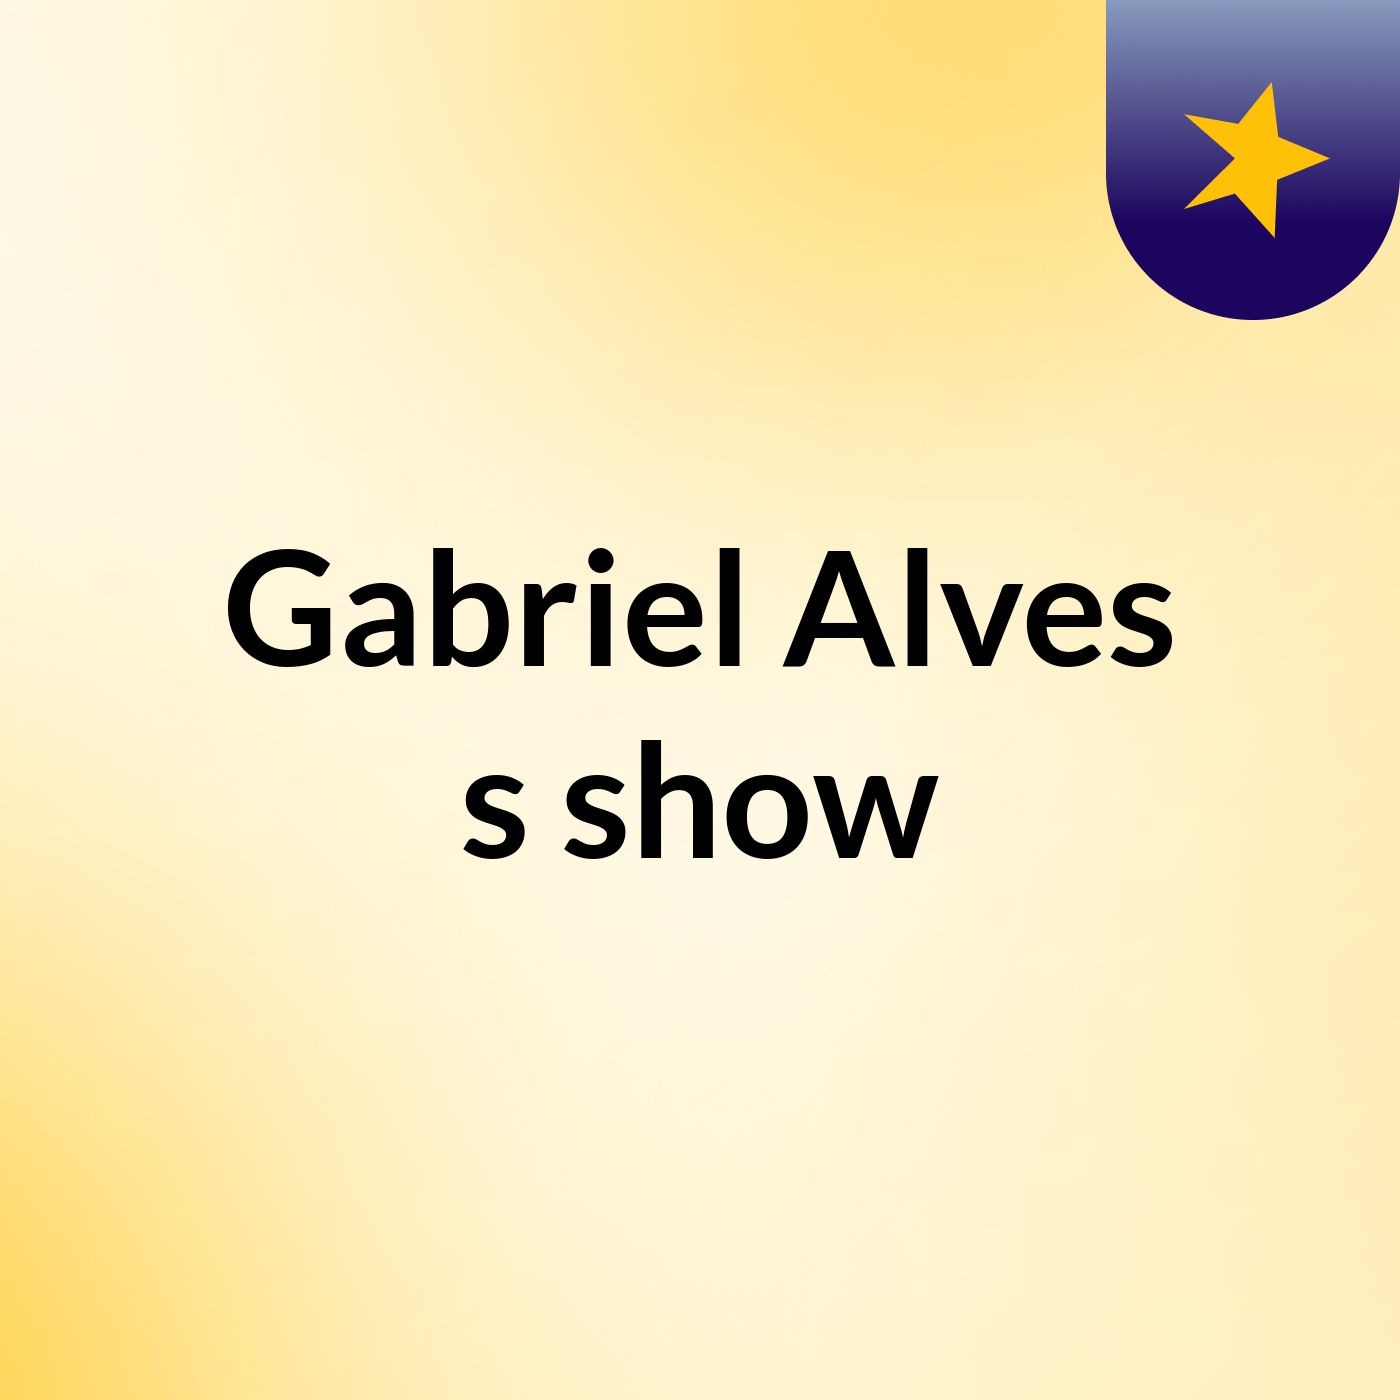 Gabriel Alves's show